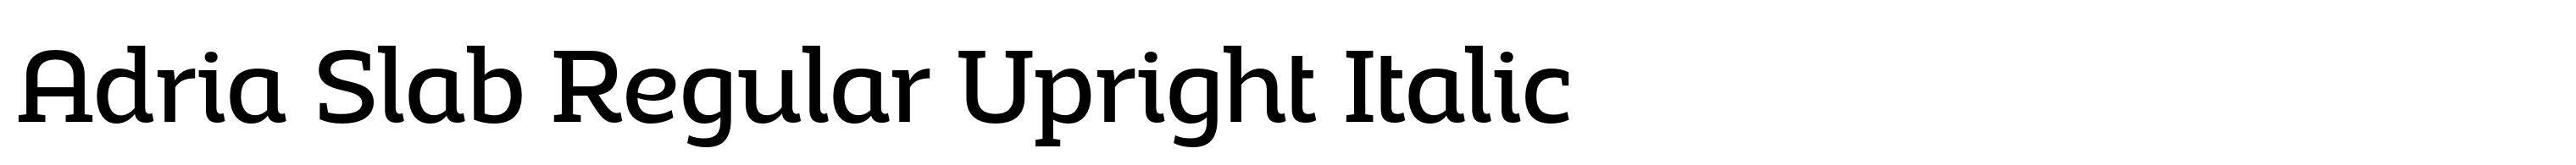 Adria Slab Regular Upright Italic